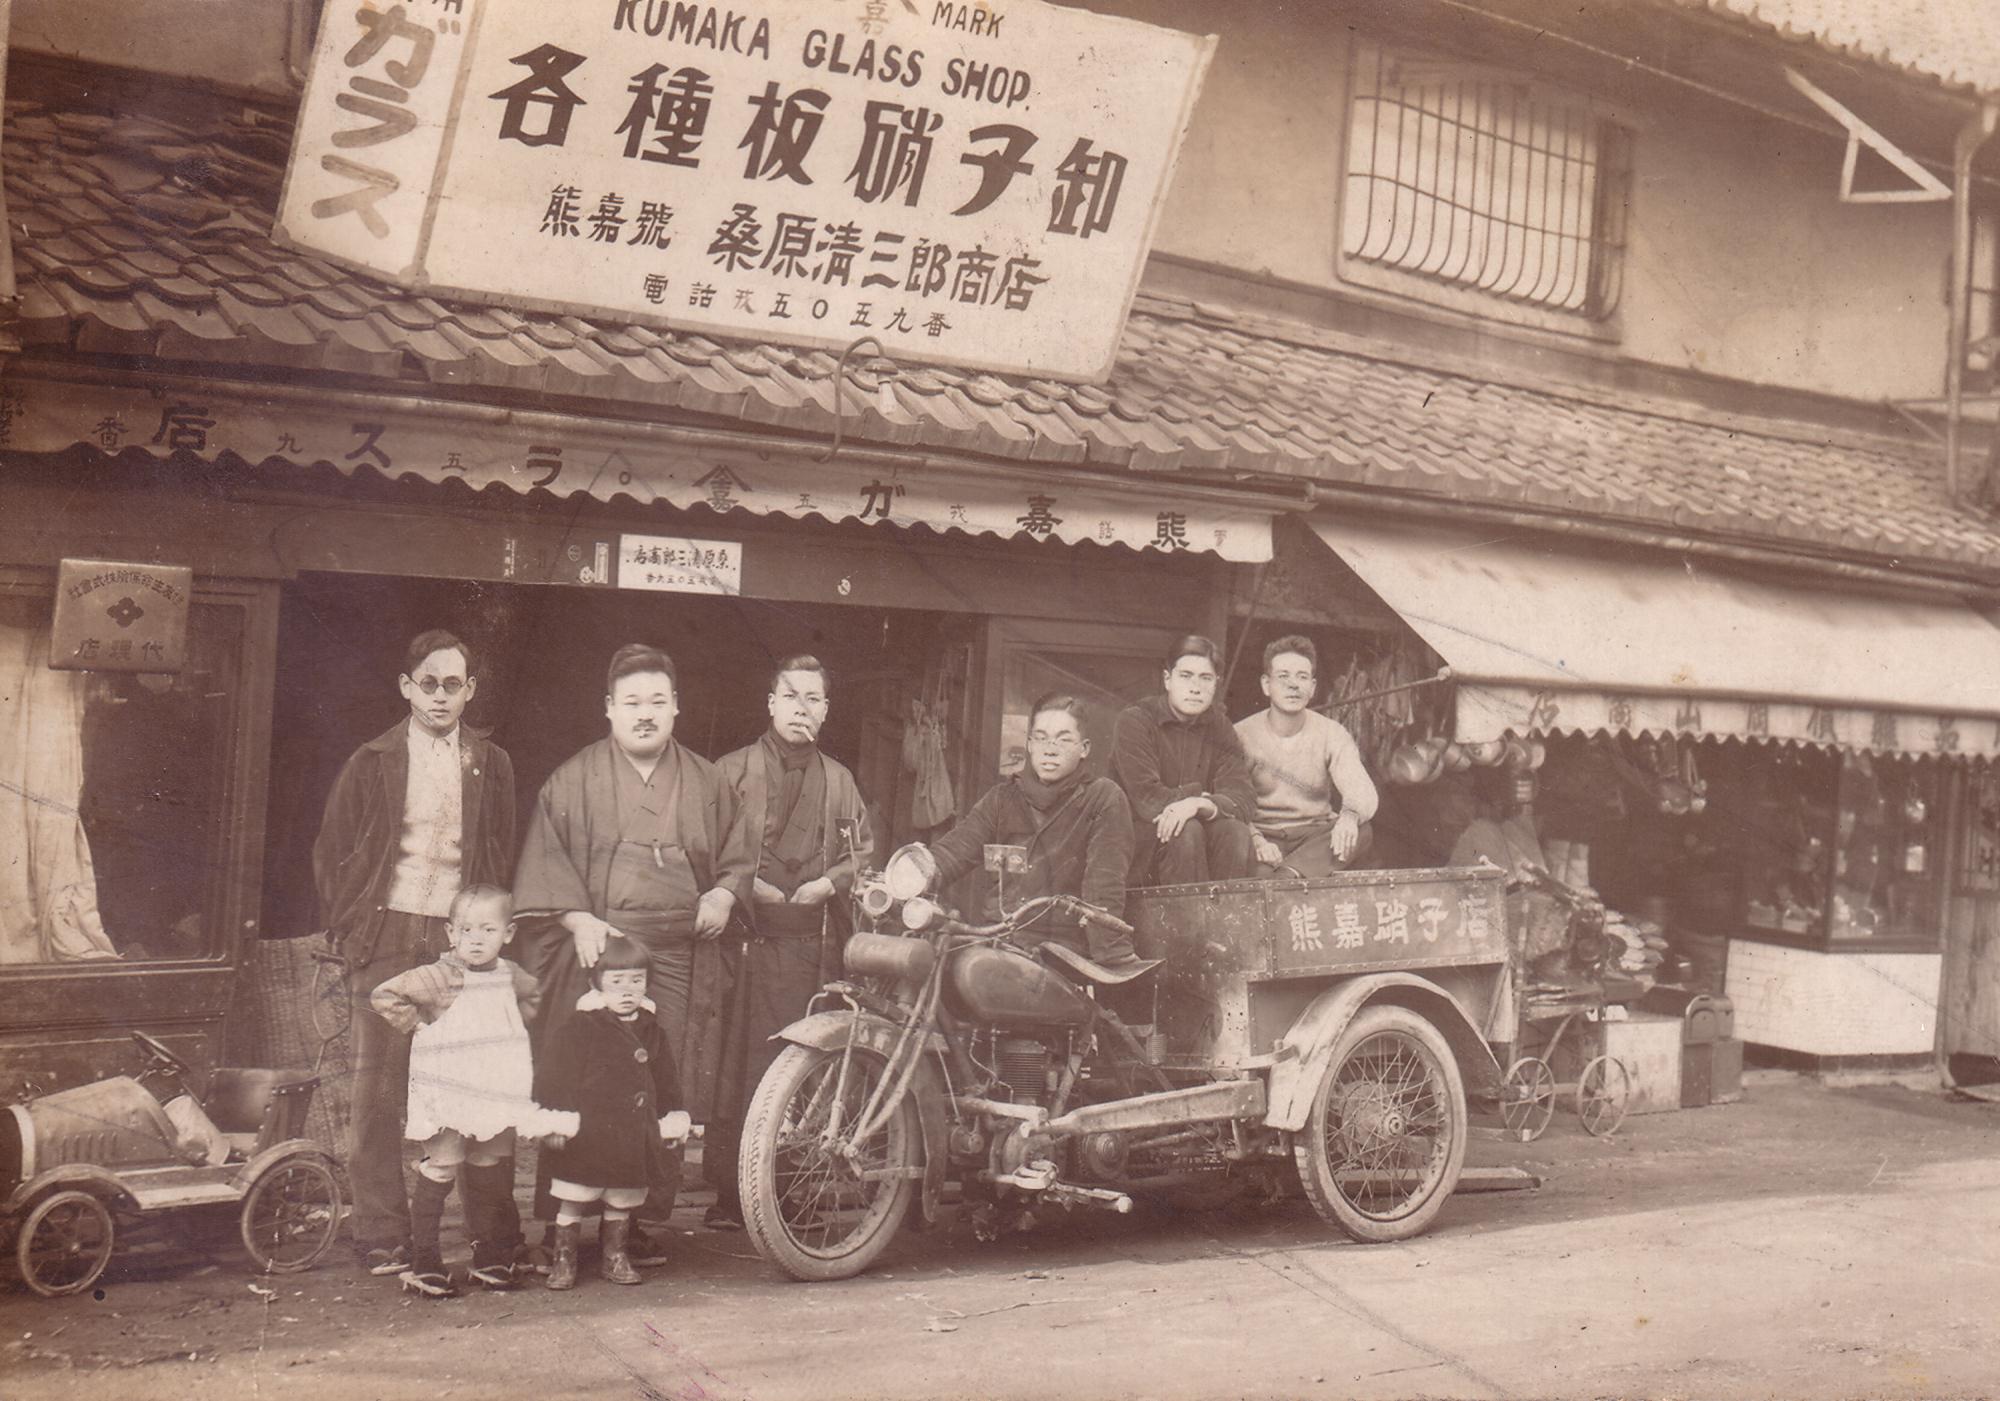 クマカ硝子店の歴史のイメージ